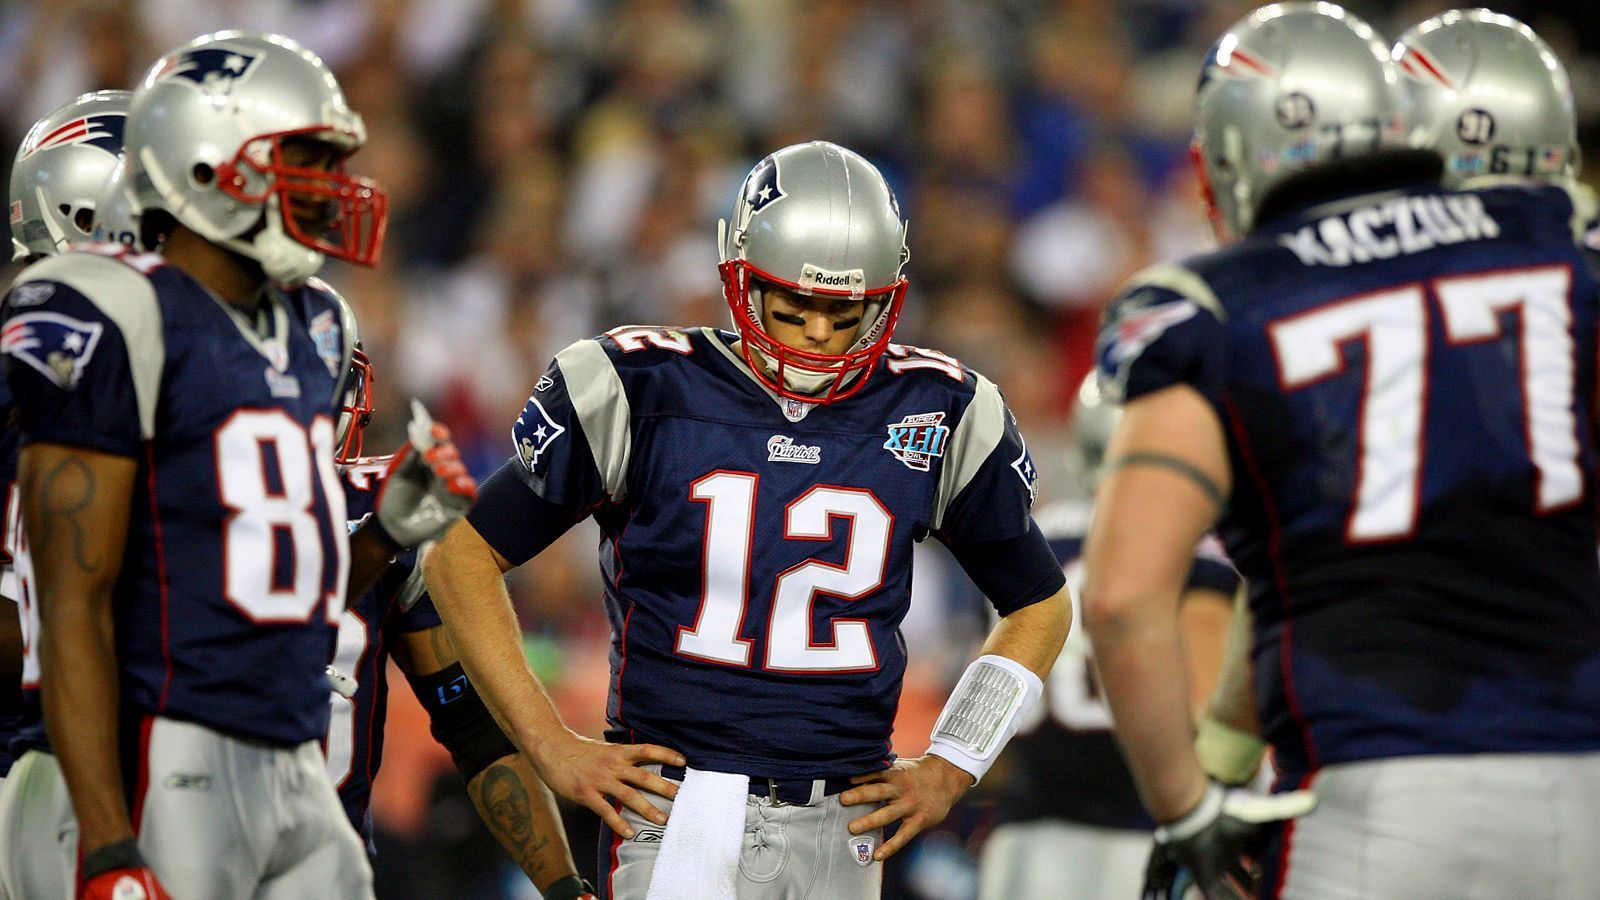 
                <strong>Tom Brady, New England Patriots - Super Bowl XLII</strong><br>
                2007 hätte Geschichte geschrieben werden sollen. Die New England Patriots um Tom Brady waren auf dem besten Weg zur perfekten Saison. Es wäre die erst zweite überhaupt in der Super-Bowl-Ära gewesen. Tom Brady führte sein Team zu einer 16-0-Bilanz in der Regular Season und mit zwei ungefährdeten Playoff-Siegen in den Super Bowl XLII - seinem damals vierten. Erstmals allerdings wurde ihm in dieser Saison der MVP Award verliehen. Mit 4.806 Passing Yards, 50 Touchdowns (damals neuer NFL-Rekord) und einem Passer Rating von 117,1 führte kein Weg an "TB12" vorbei. Vor allem nicht für Underdog New York Giants um Eli Manning. Doch den "G-Men" gelang eines der größten Upsets der NFL-Geschichte. Brady warf zwar 266 Yards und einen Touchdown, doch die Giants machten der perfekten Saison der Patriots 35 Sekunden vor Schluss mit einem Game Winning Touchdown zum 17:14 einen Strich durch die Rechnung. 
              